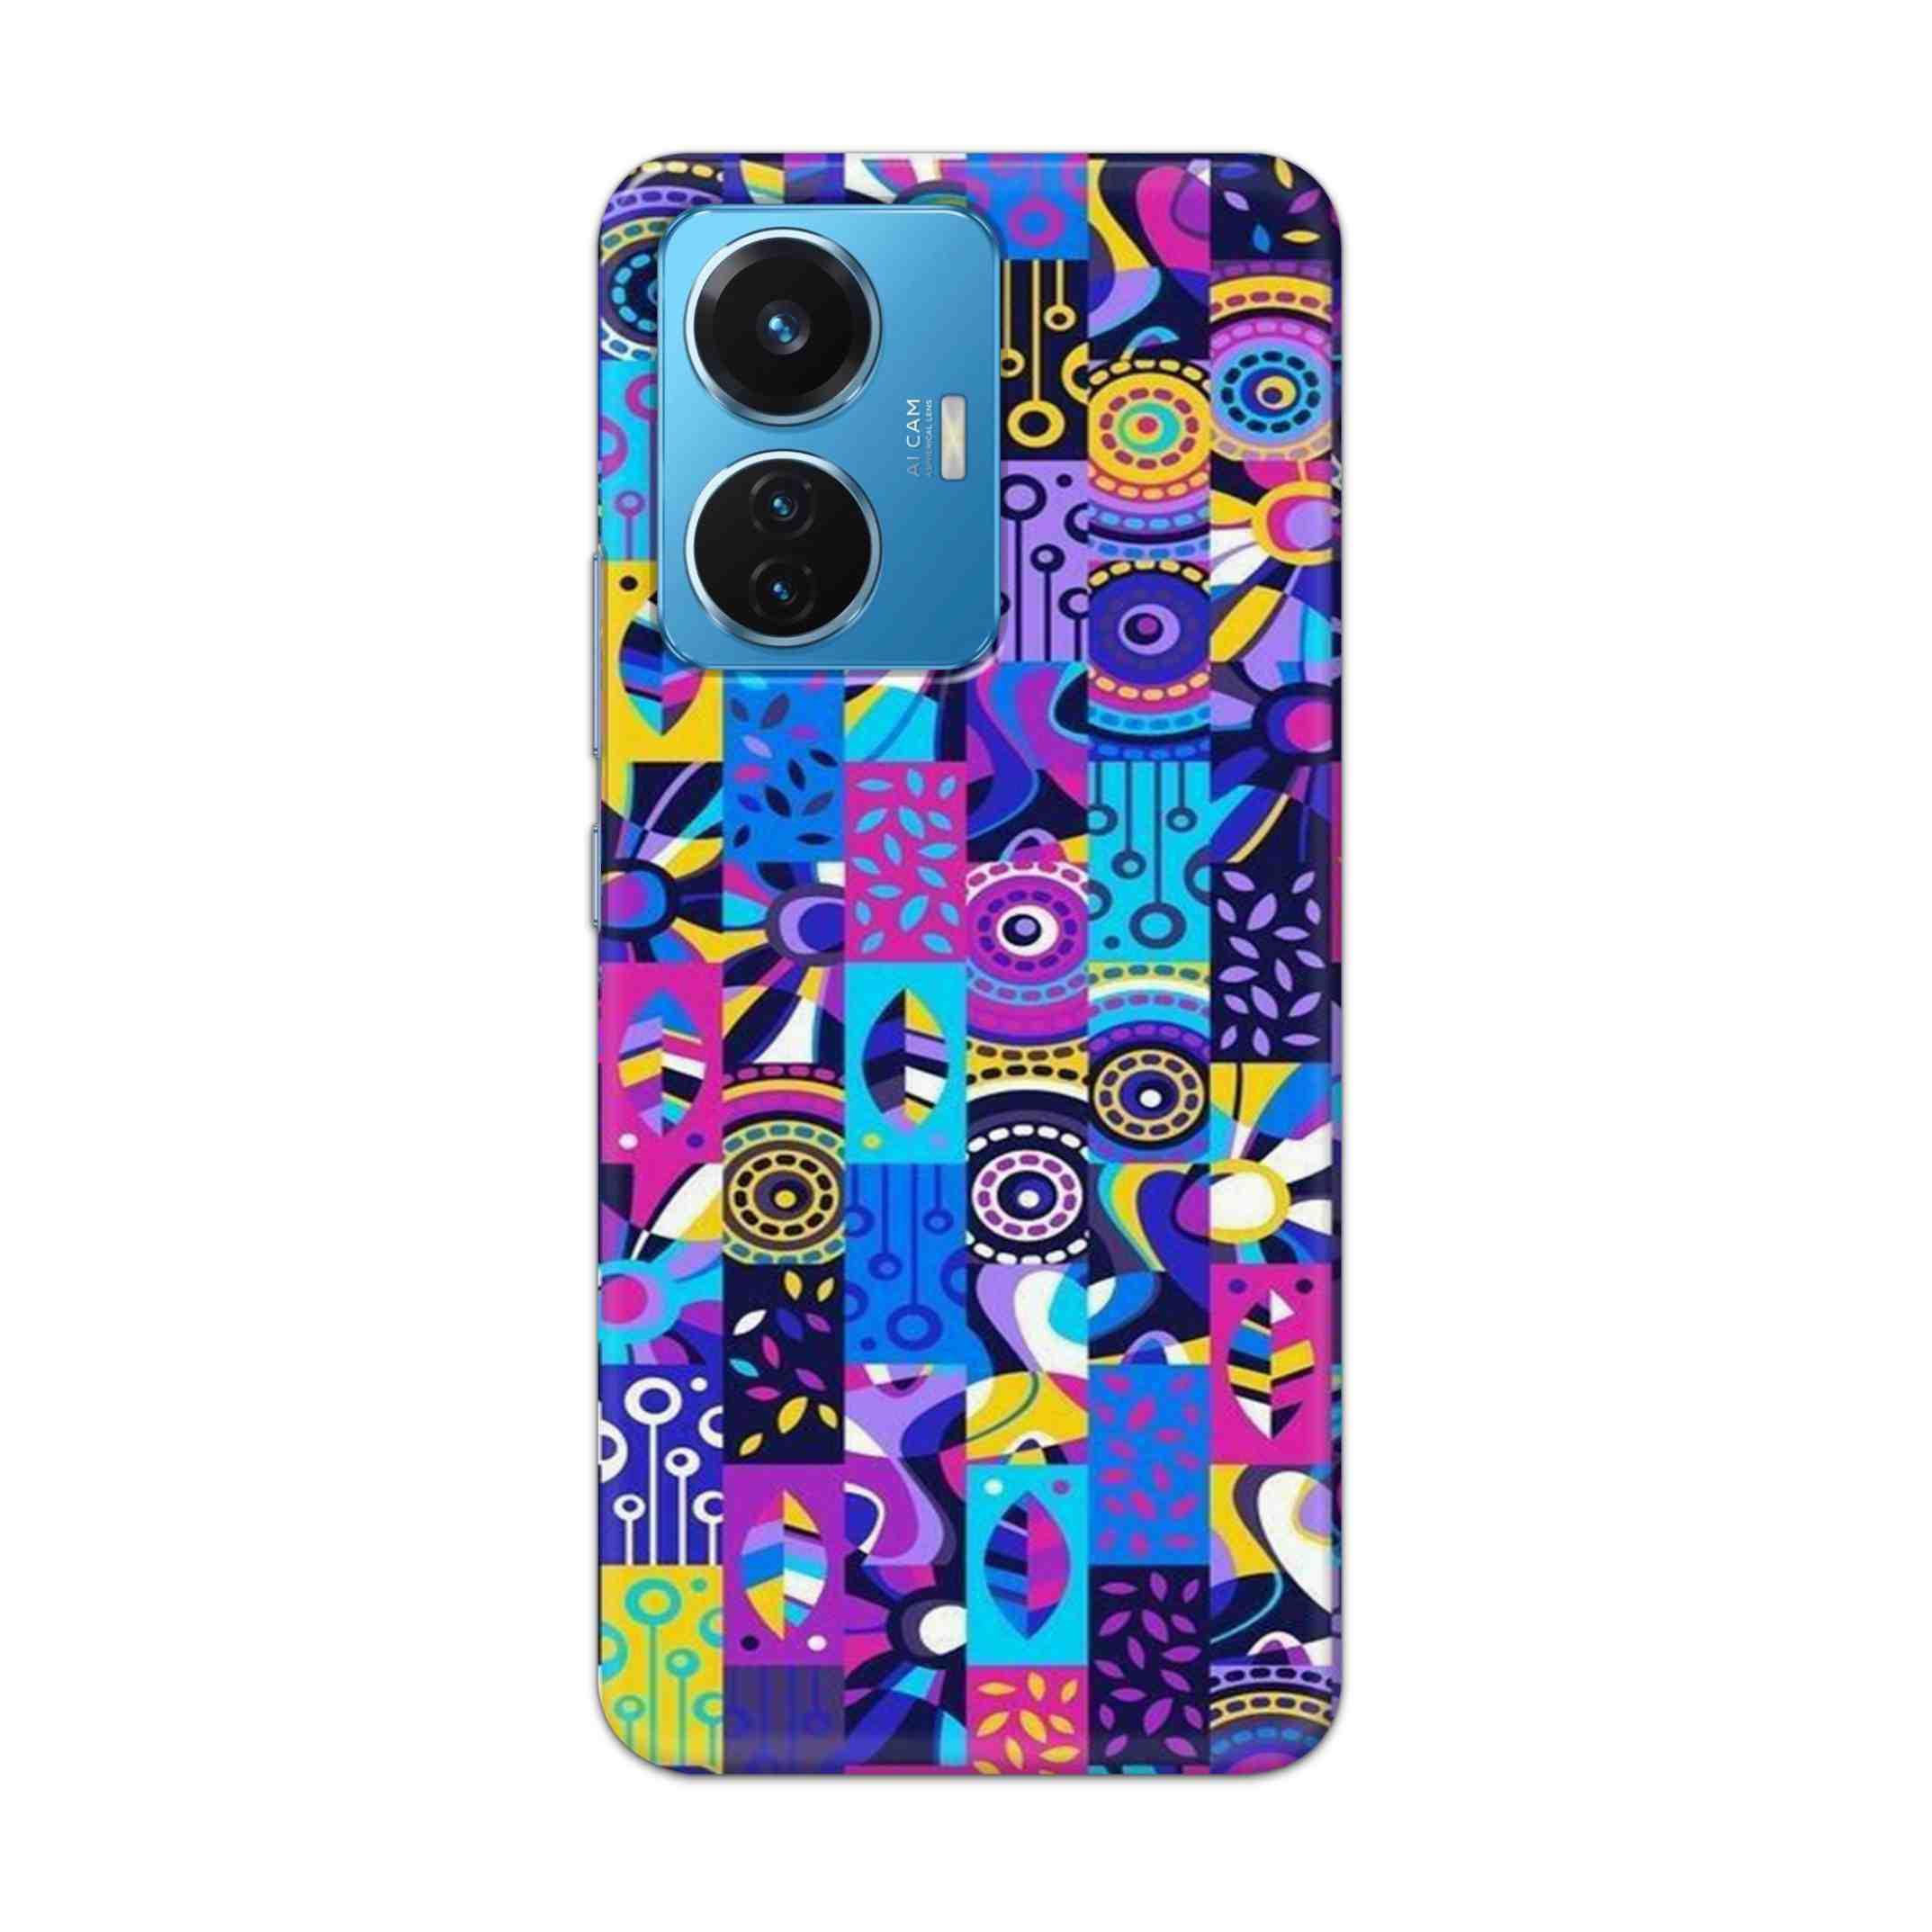 Buy Rainbow Art Hard Back Mobile Phone Case Cover For Vivo T1 44W Online